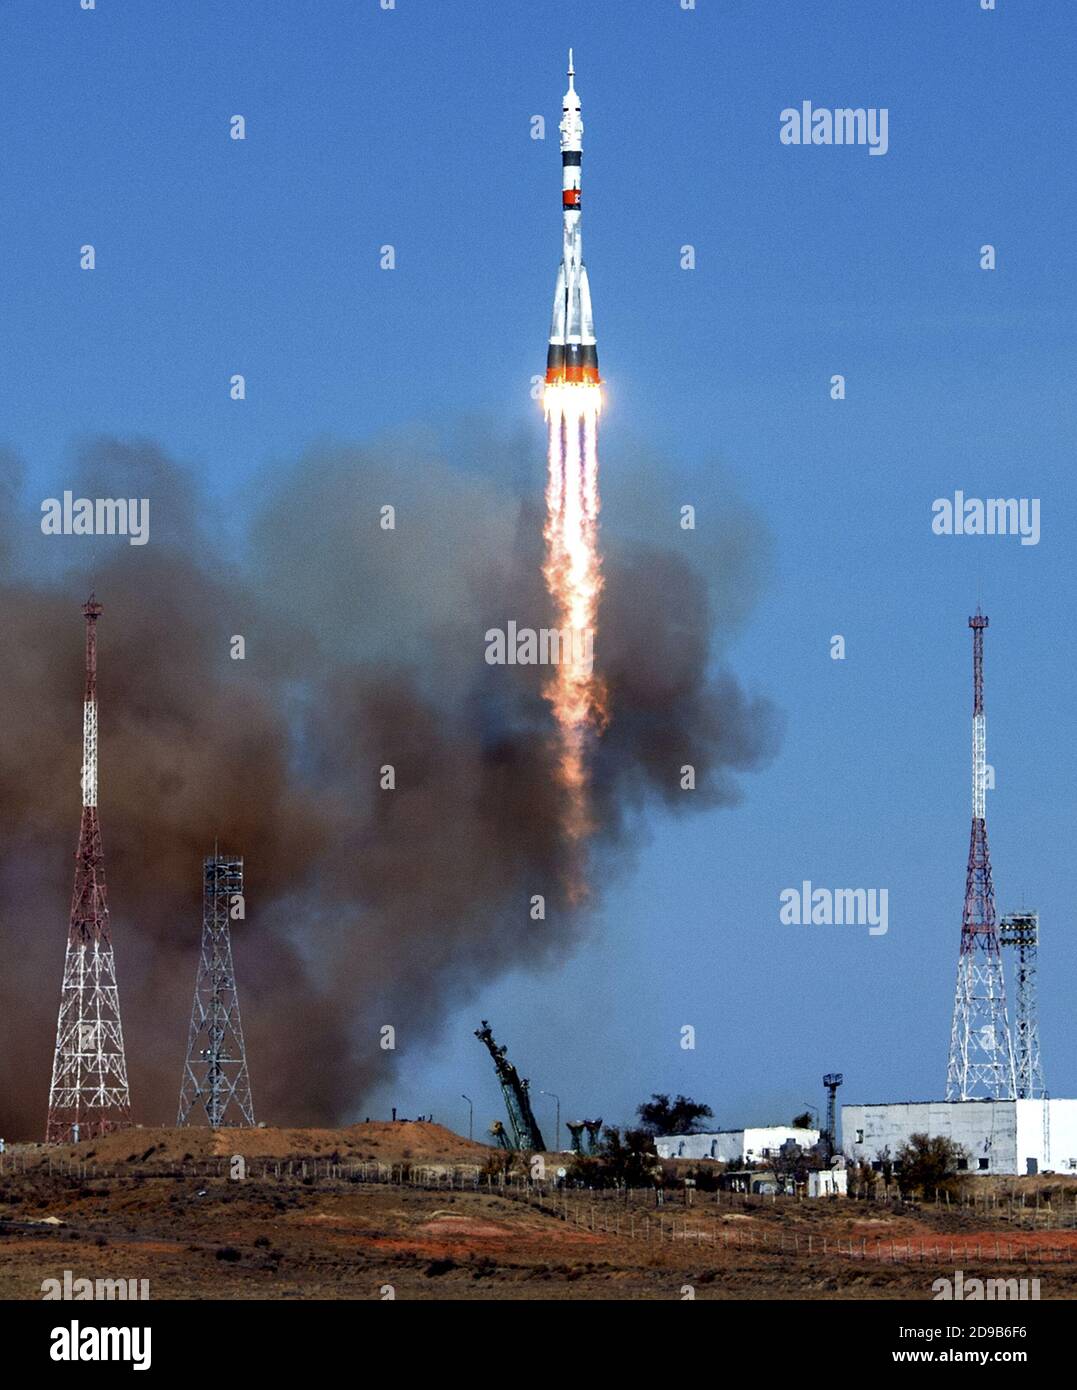 BAIKONUR, KAZAJSTÁN - 14 de octubre de 2020 - el cohete Soyuz MS-17 se lanza con la expedición 64 cosmonautas rusos Sergey Ryzhikov y Sergey Kud-Sverc Foto de stock